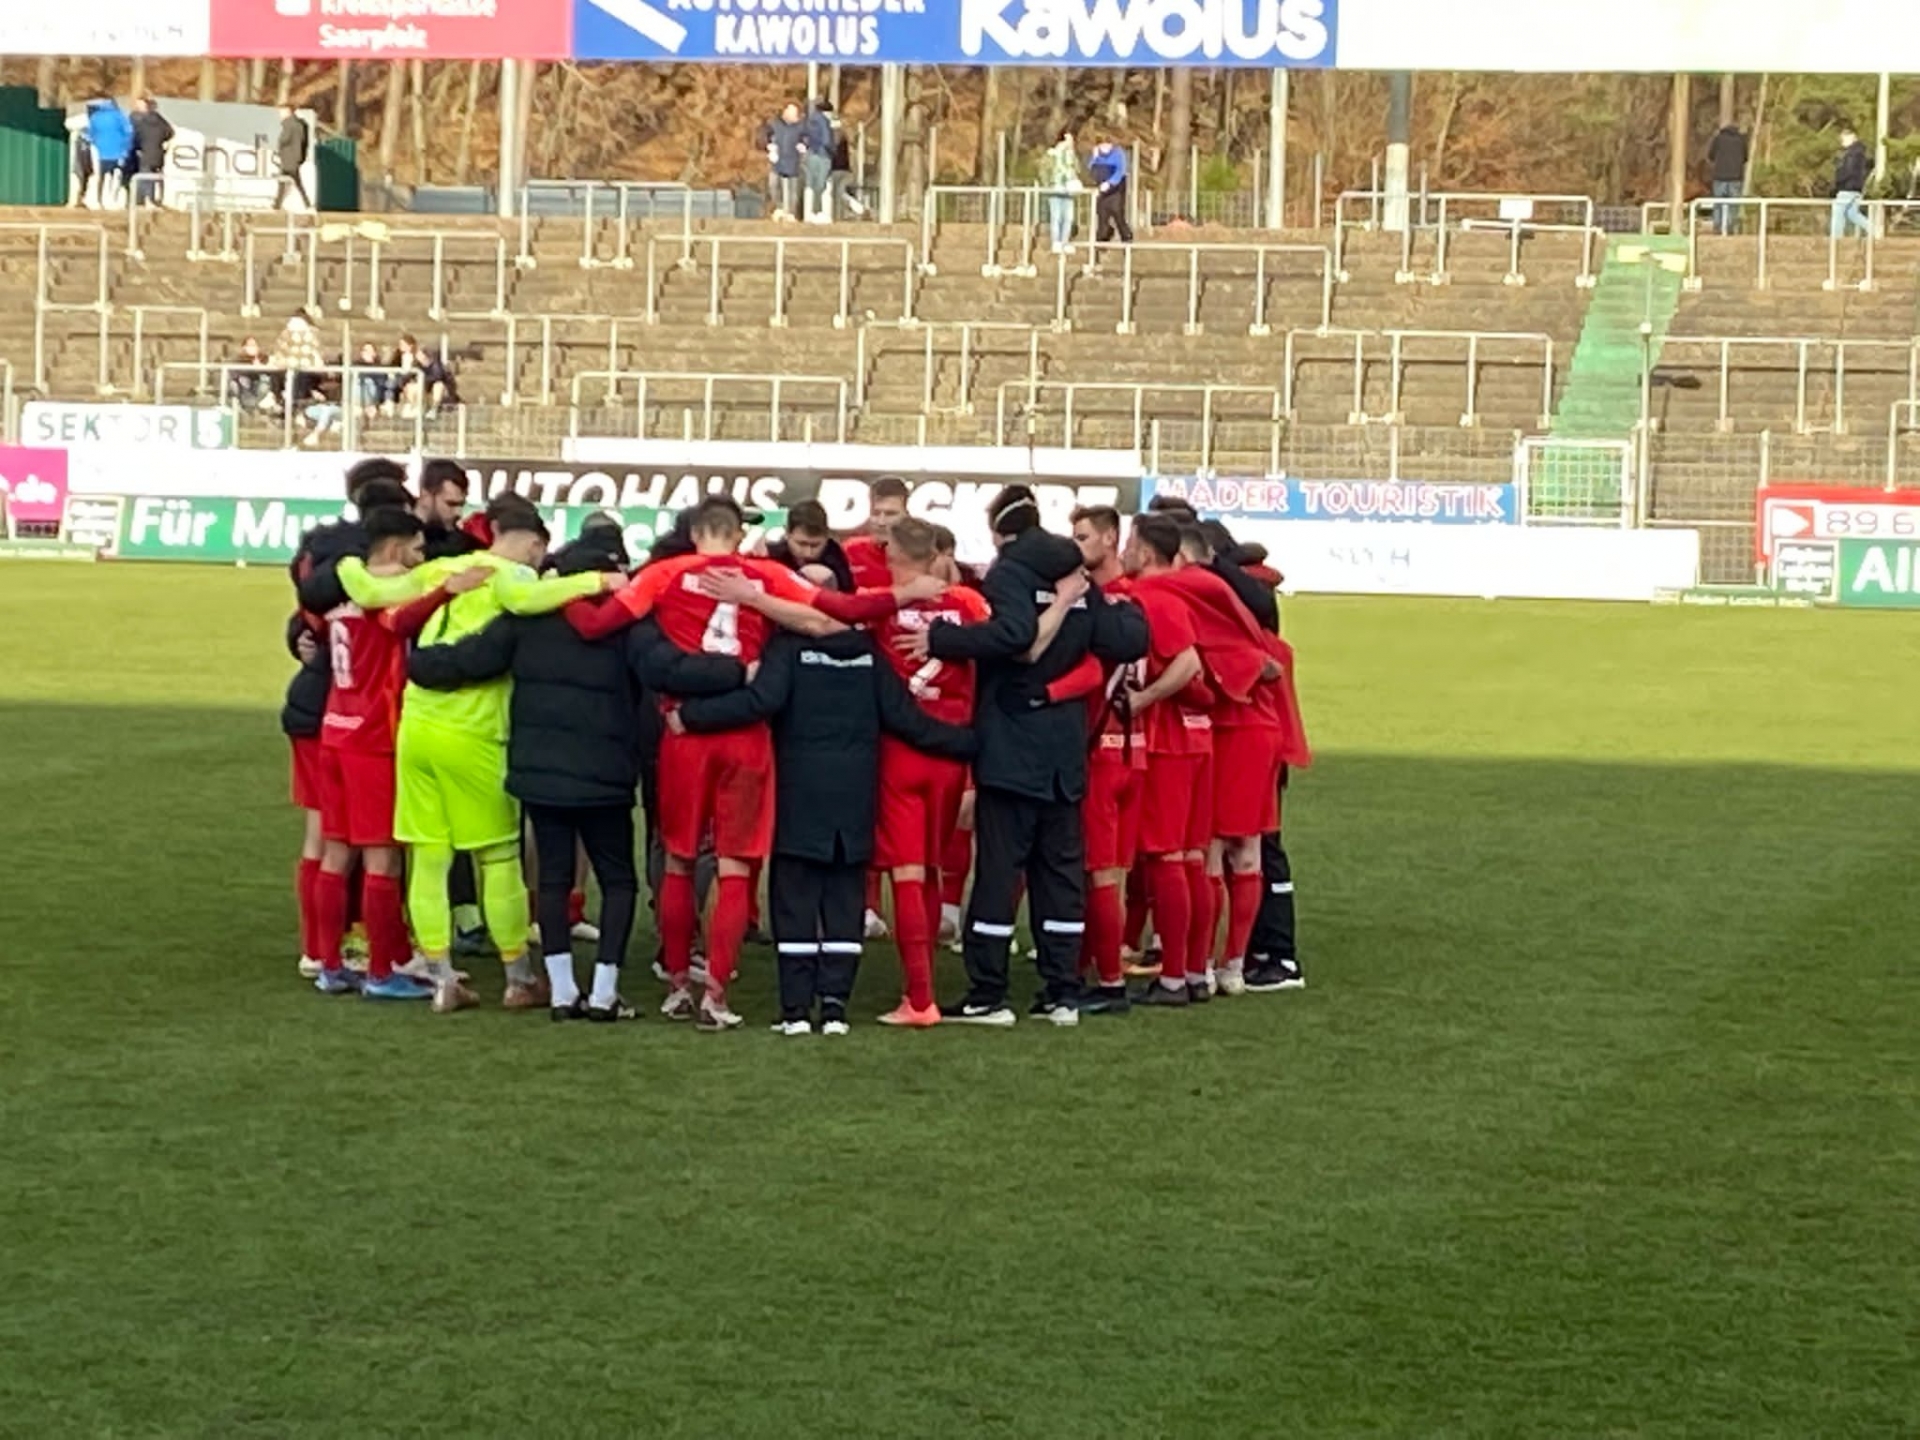 FC Homburg - KSV Hessen: Kreis, Einstimmung